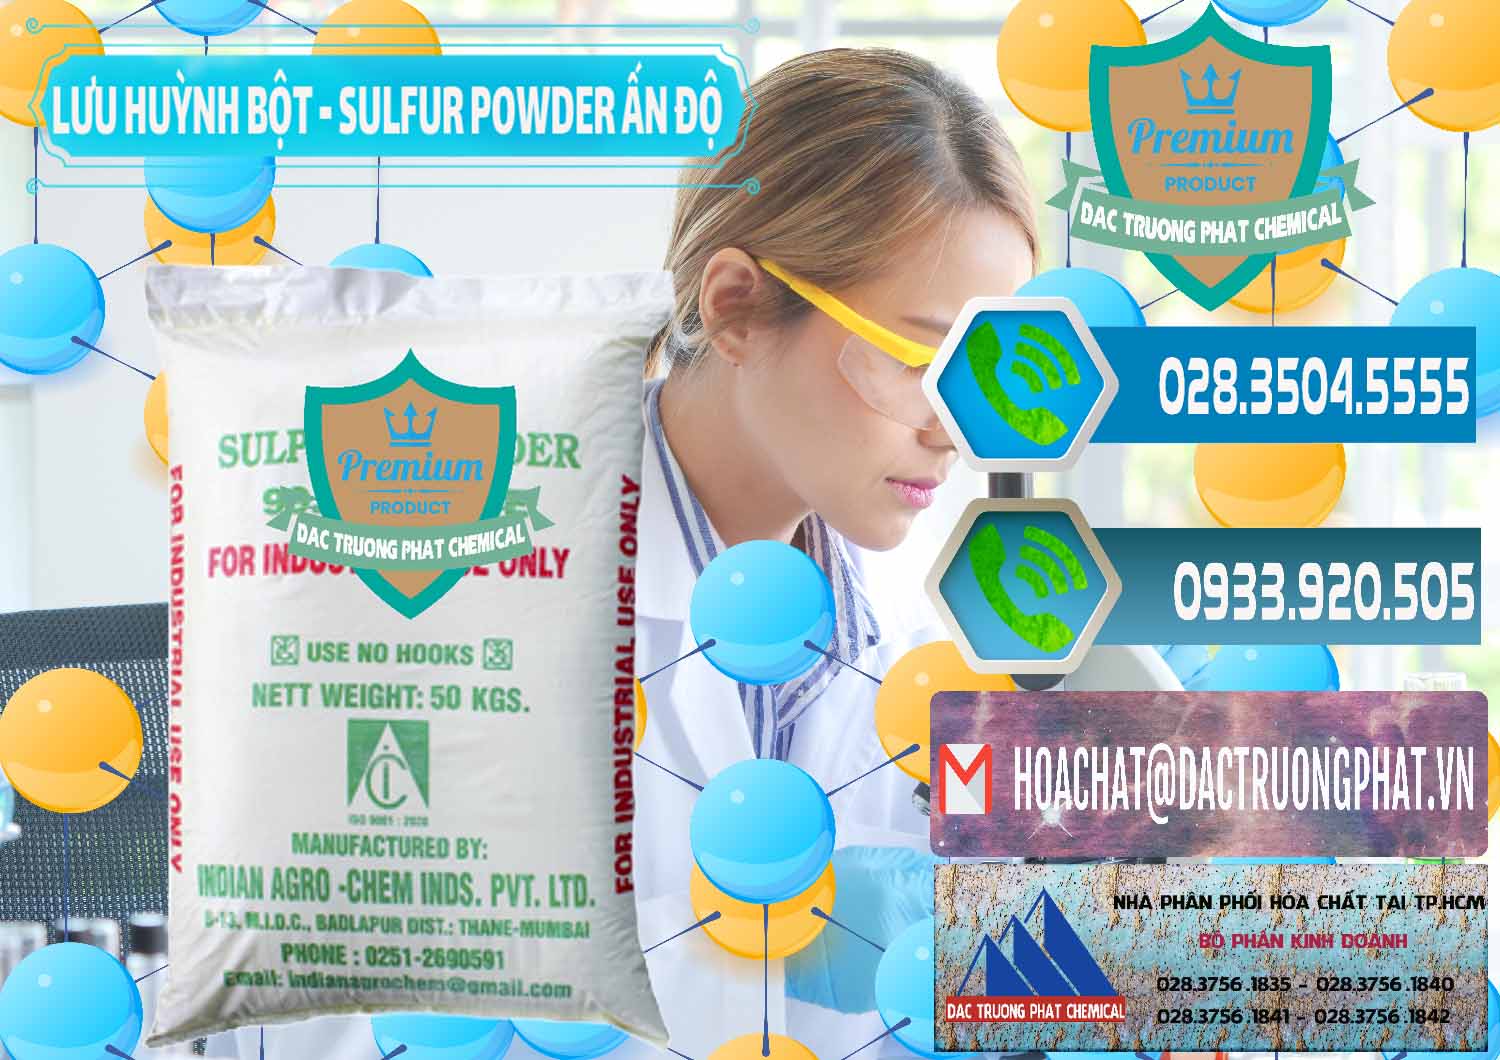 Công ty bán và cung ứng Lưu huỳnh Bột - Sulfur Powder Ấn Độ India - 0347 - Công ty chuyên cung cấp ( kinh doanh ) hóa chất tại TP.HCM - congtyhoachat.net